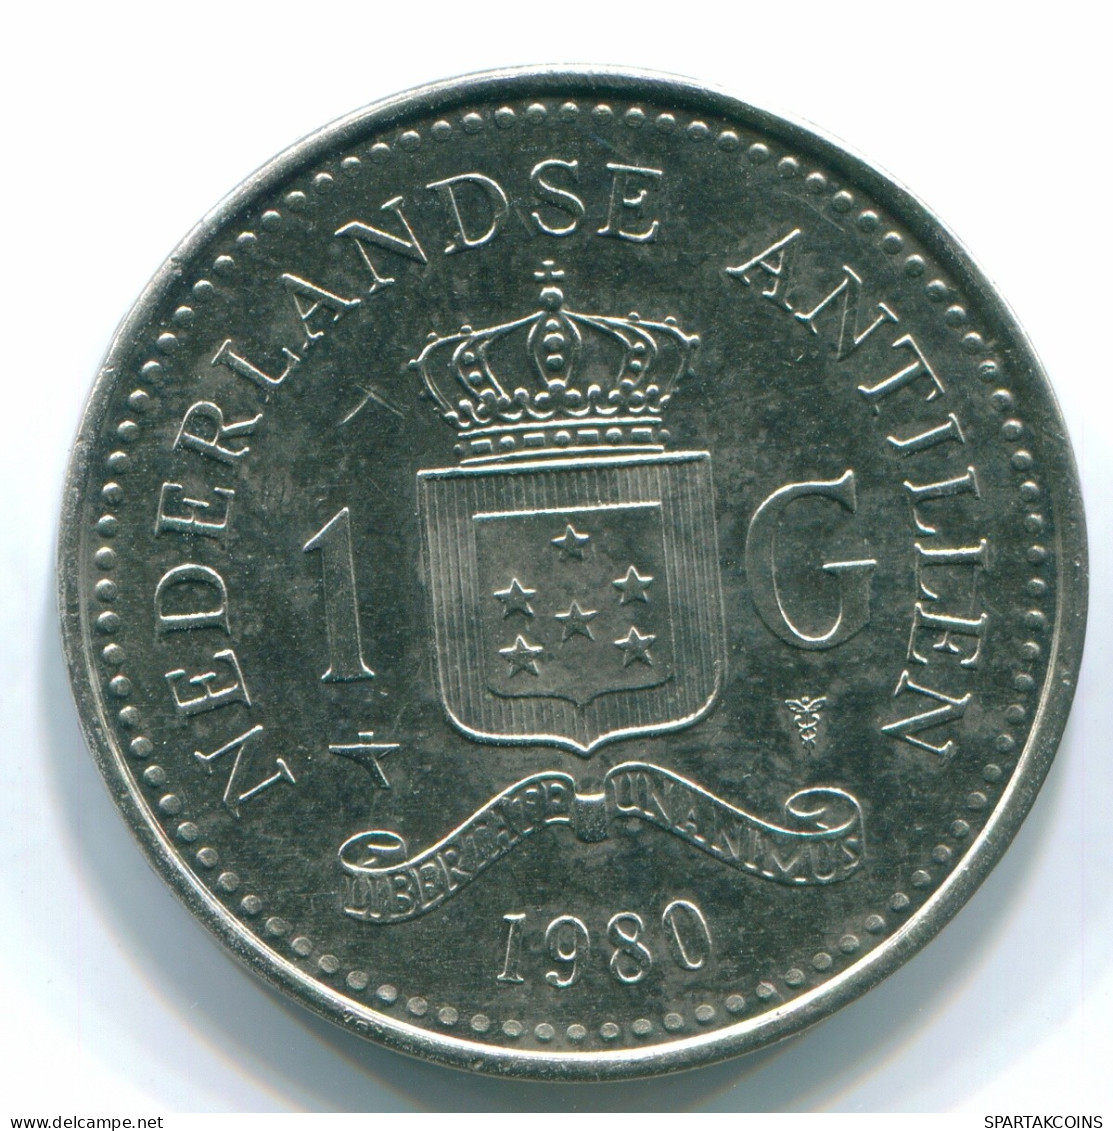 1 GULDEN 1980 NETHERLANDS ANTILLES Nickel Colonial Coin #S12046.U.A - Antillas Neerlandesas